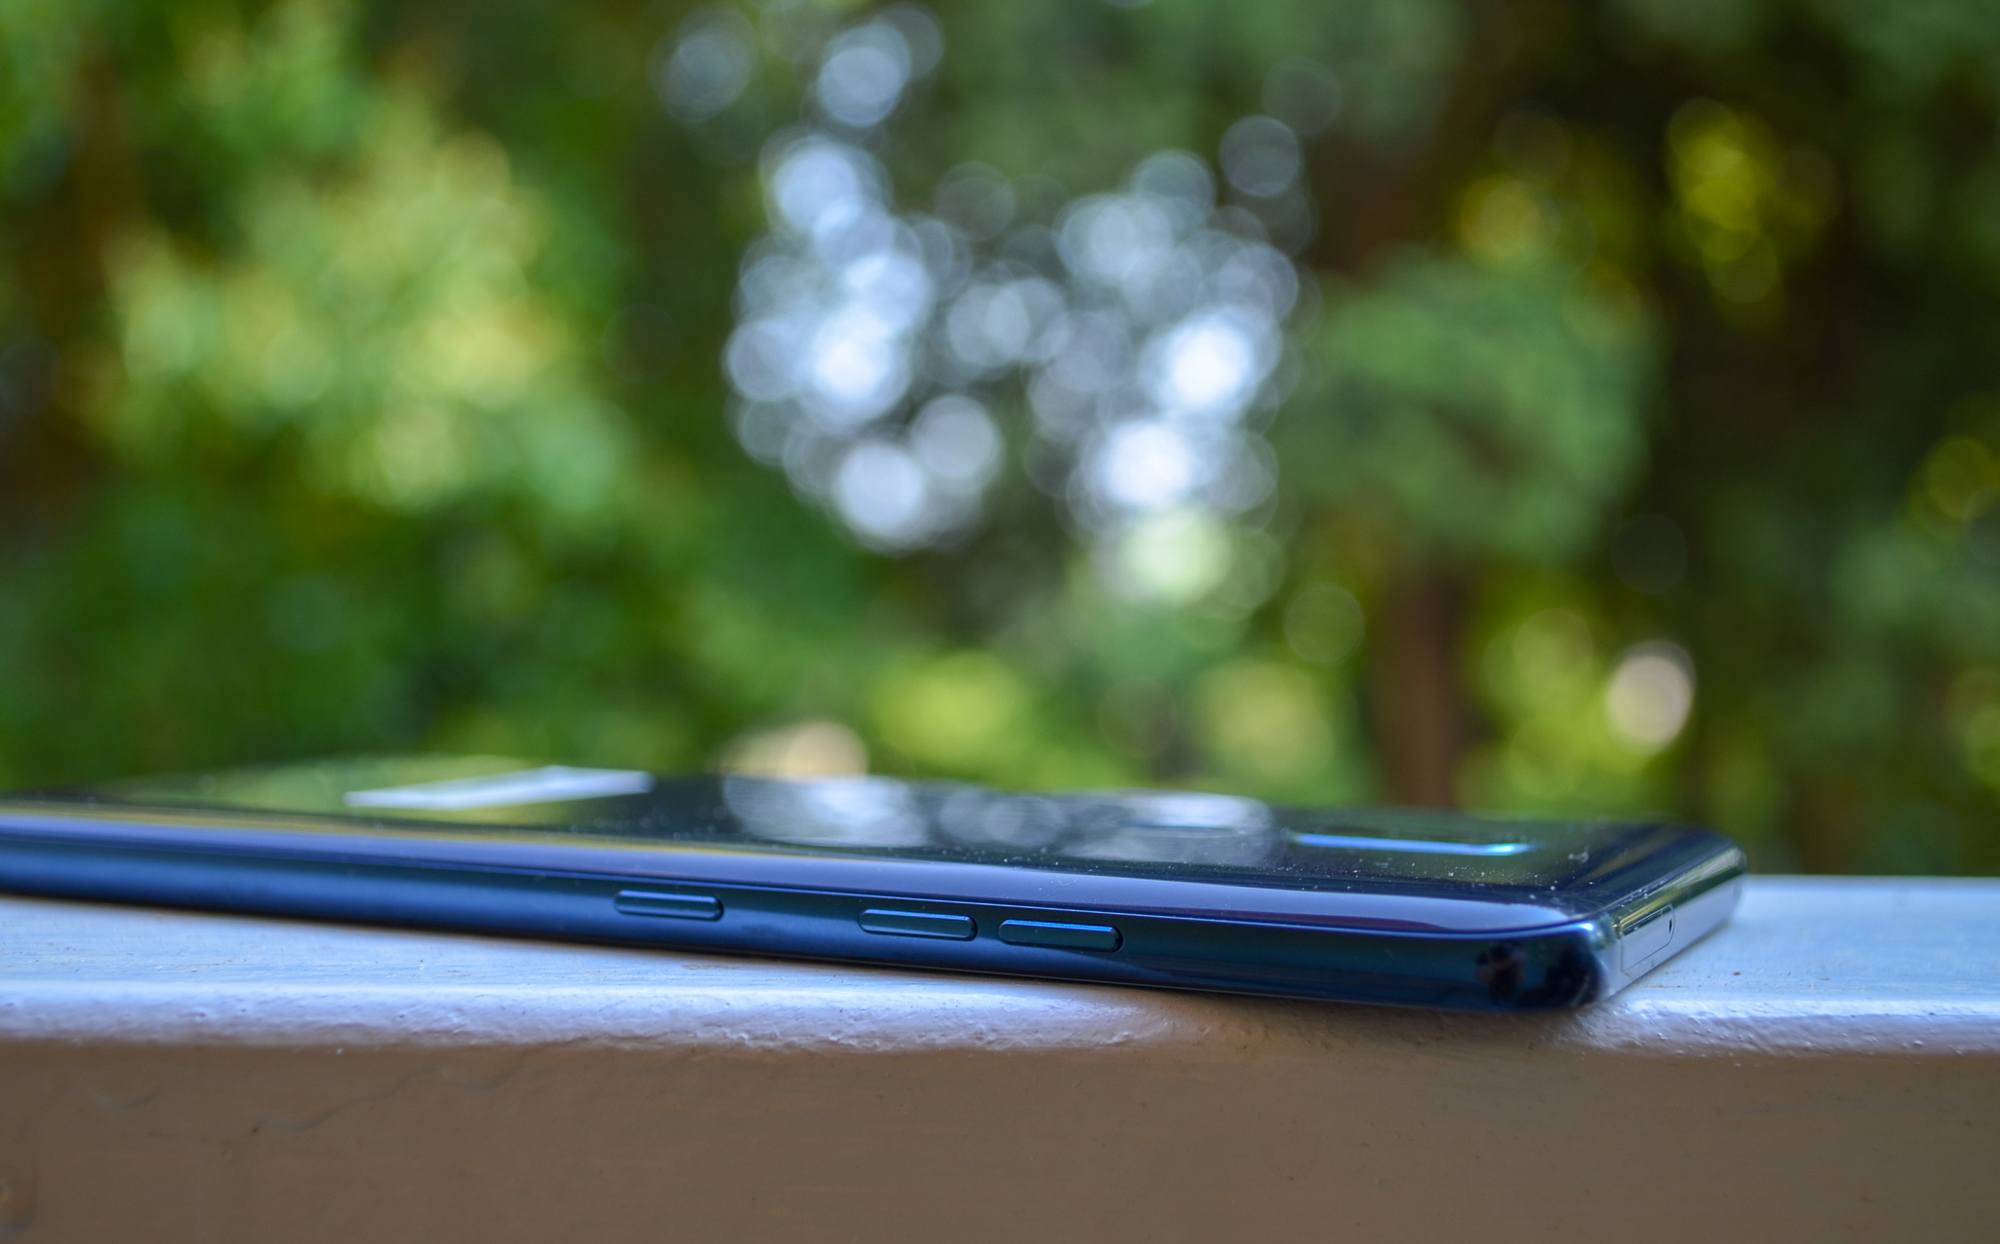 LG DSC 0406 Test – LG G7 ThinQ : Sur la pente de la réussite mais toujours pas Leader Android